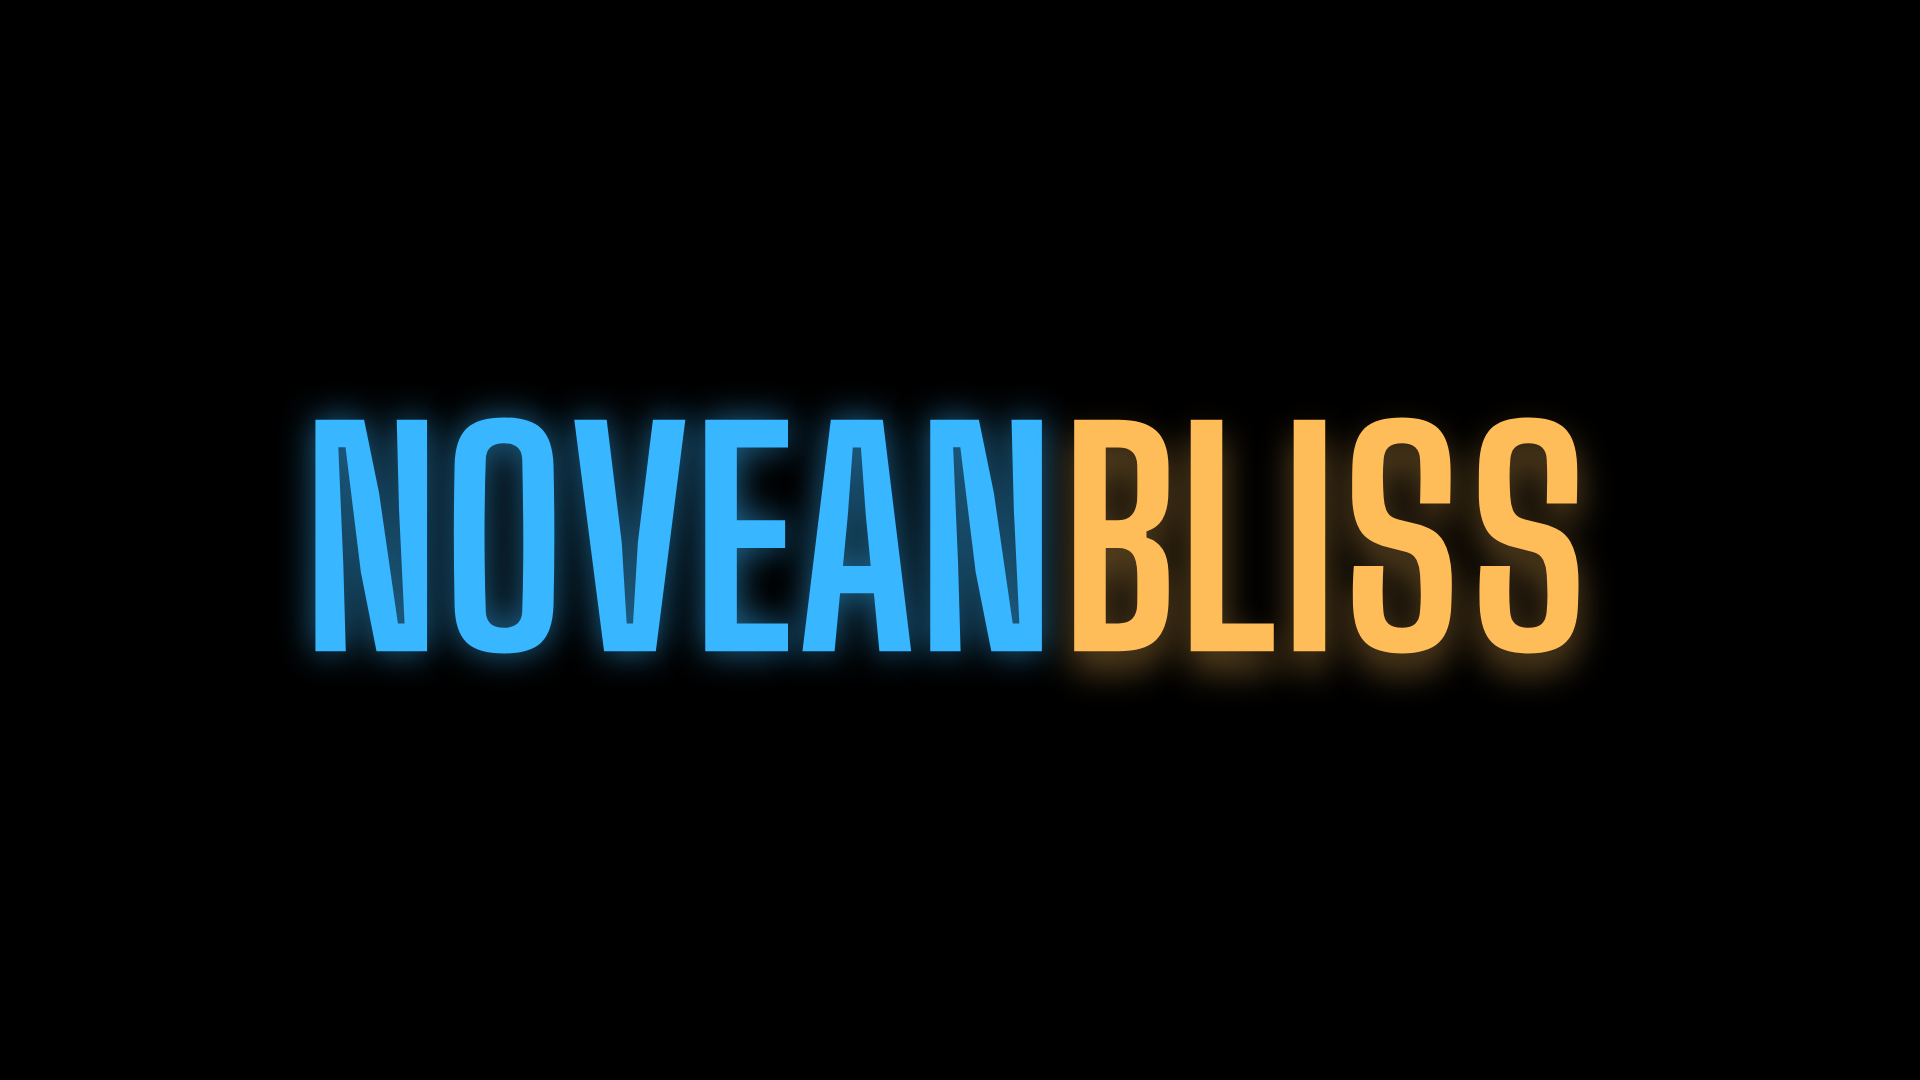 Novean Bliss